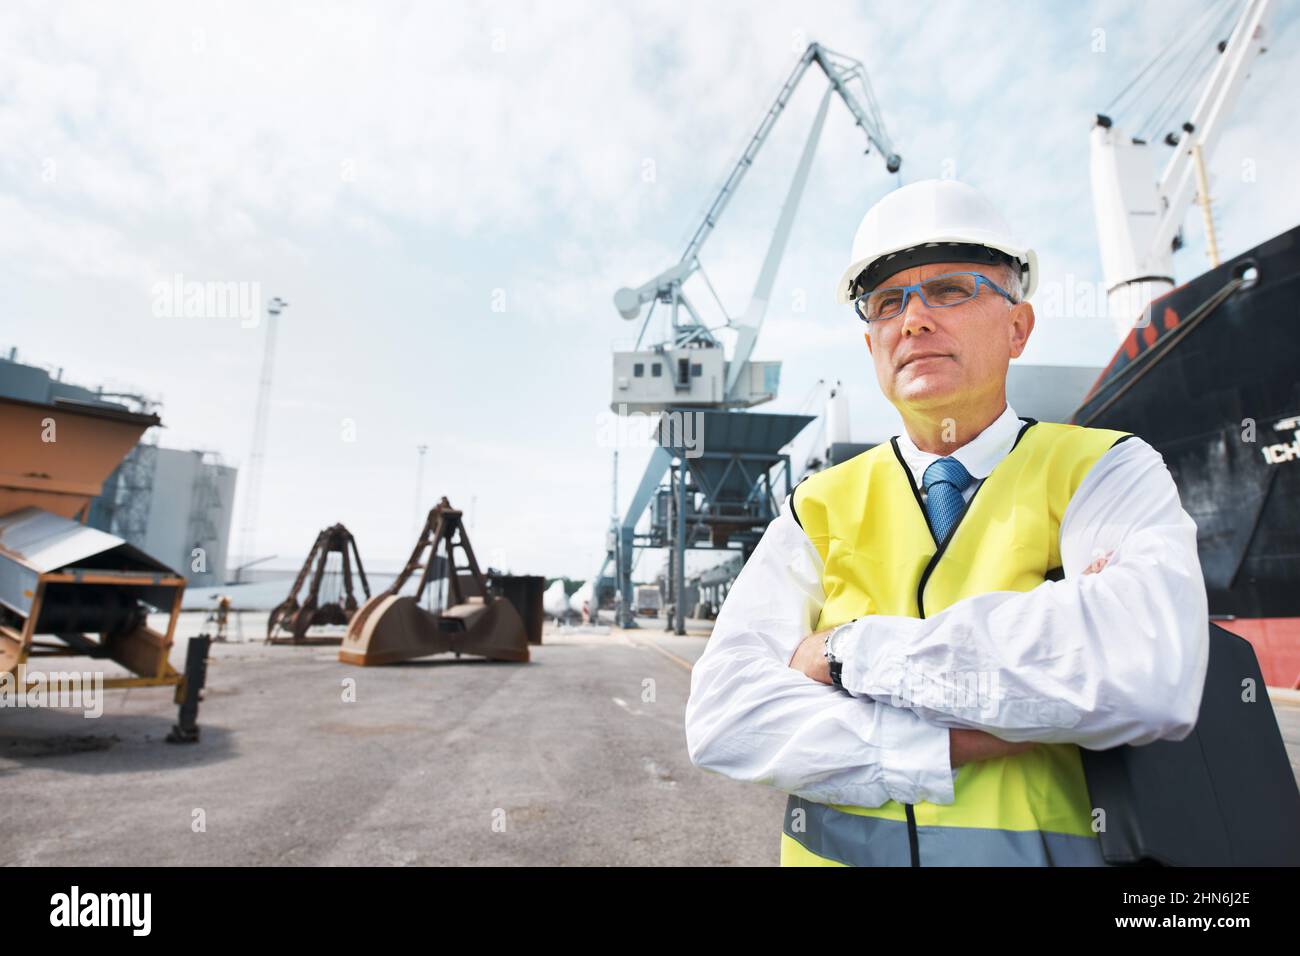 Ho la mia attività e sono orgoglioso. Ritratto di un lavoratore portuale in piedi al porto in mezzo all'attività dell'industria marittima. Foto Stock